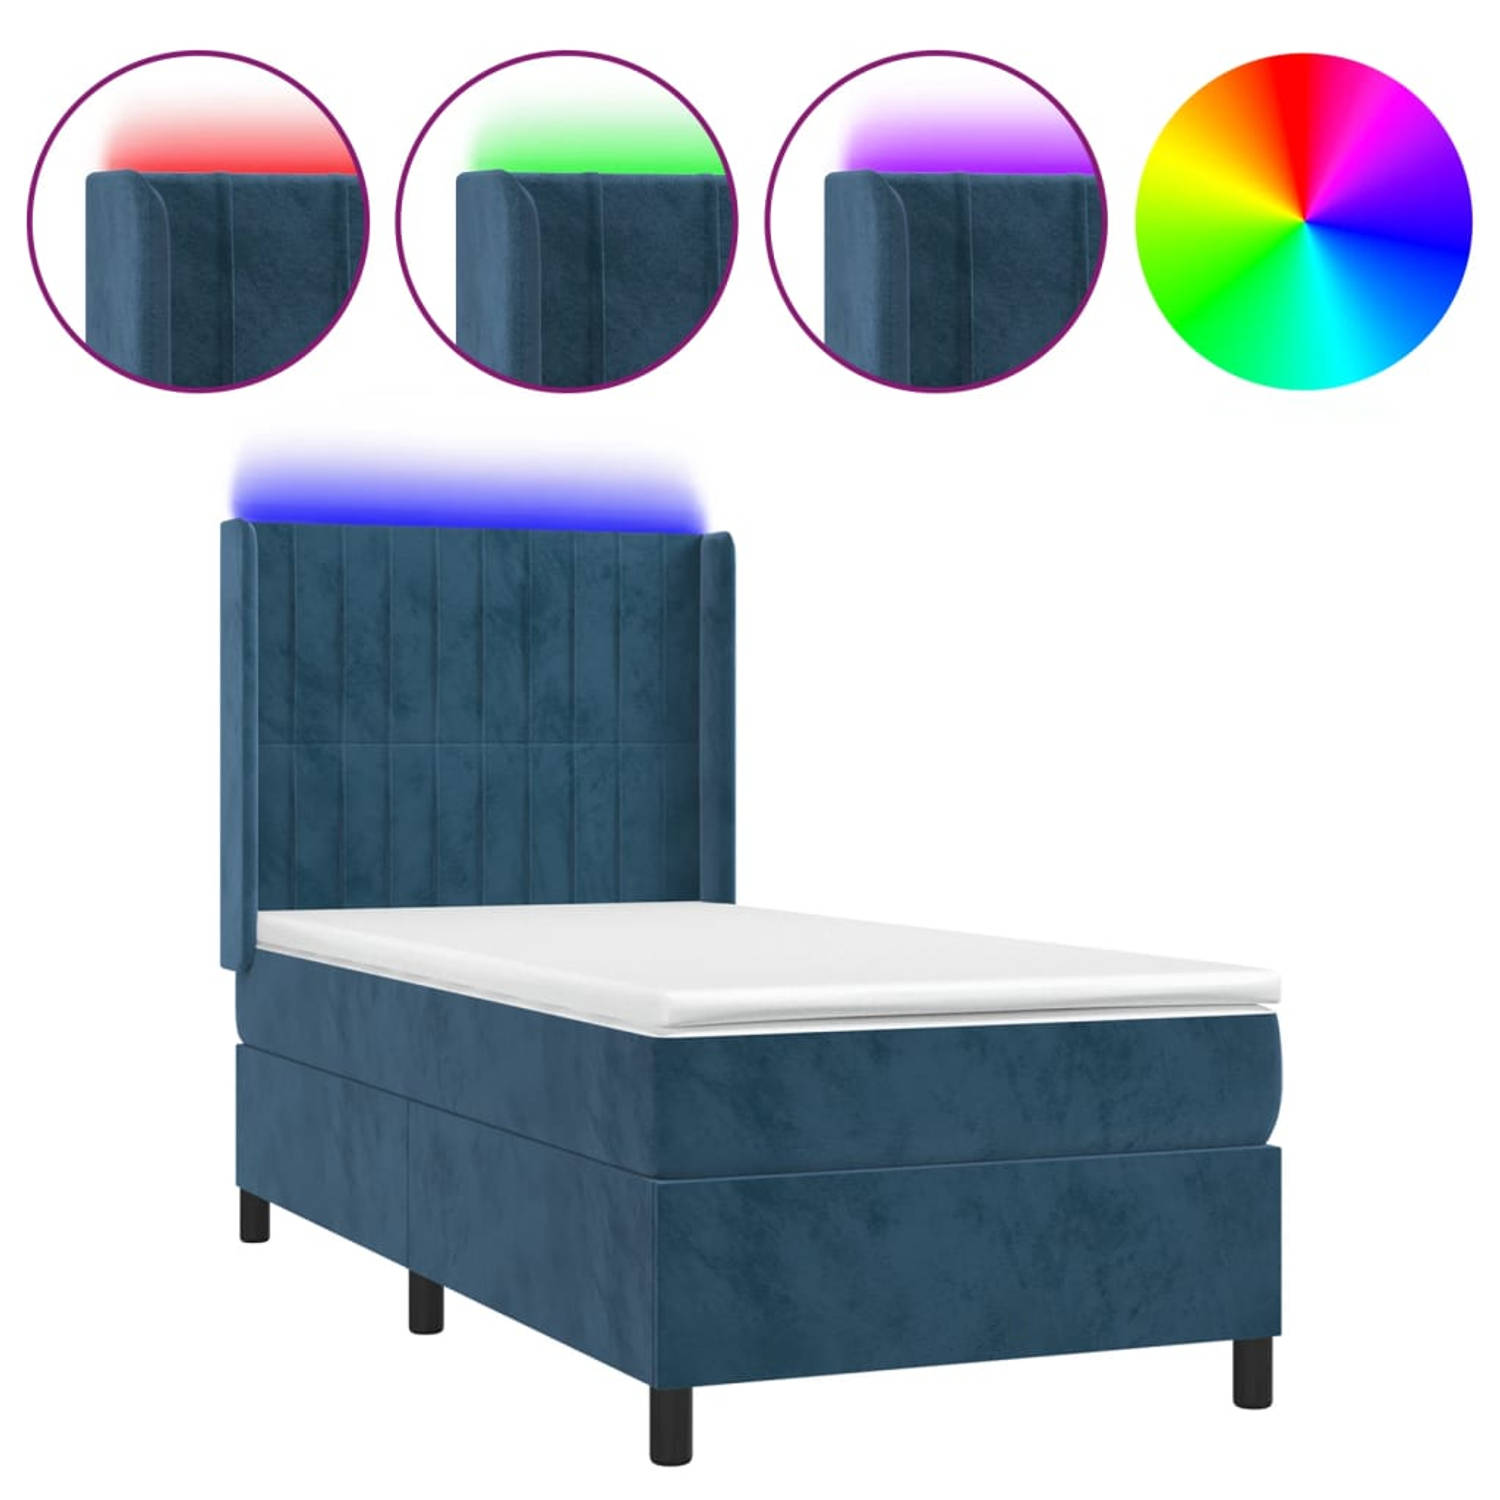 The Living Store Bed Donkerblauw Fluweel 203x83x118/128 cm - Pocketvering Matras - Huidvriendelijk Topmatras - Kleurrijke LED